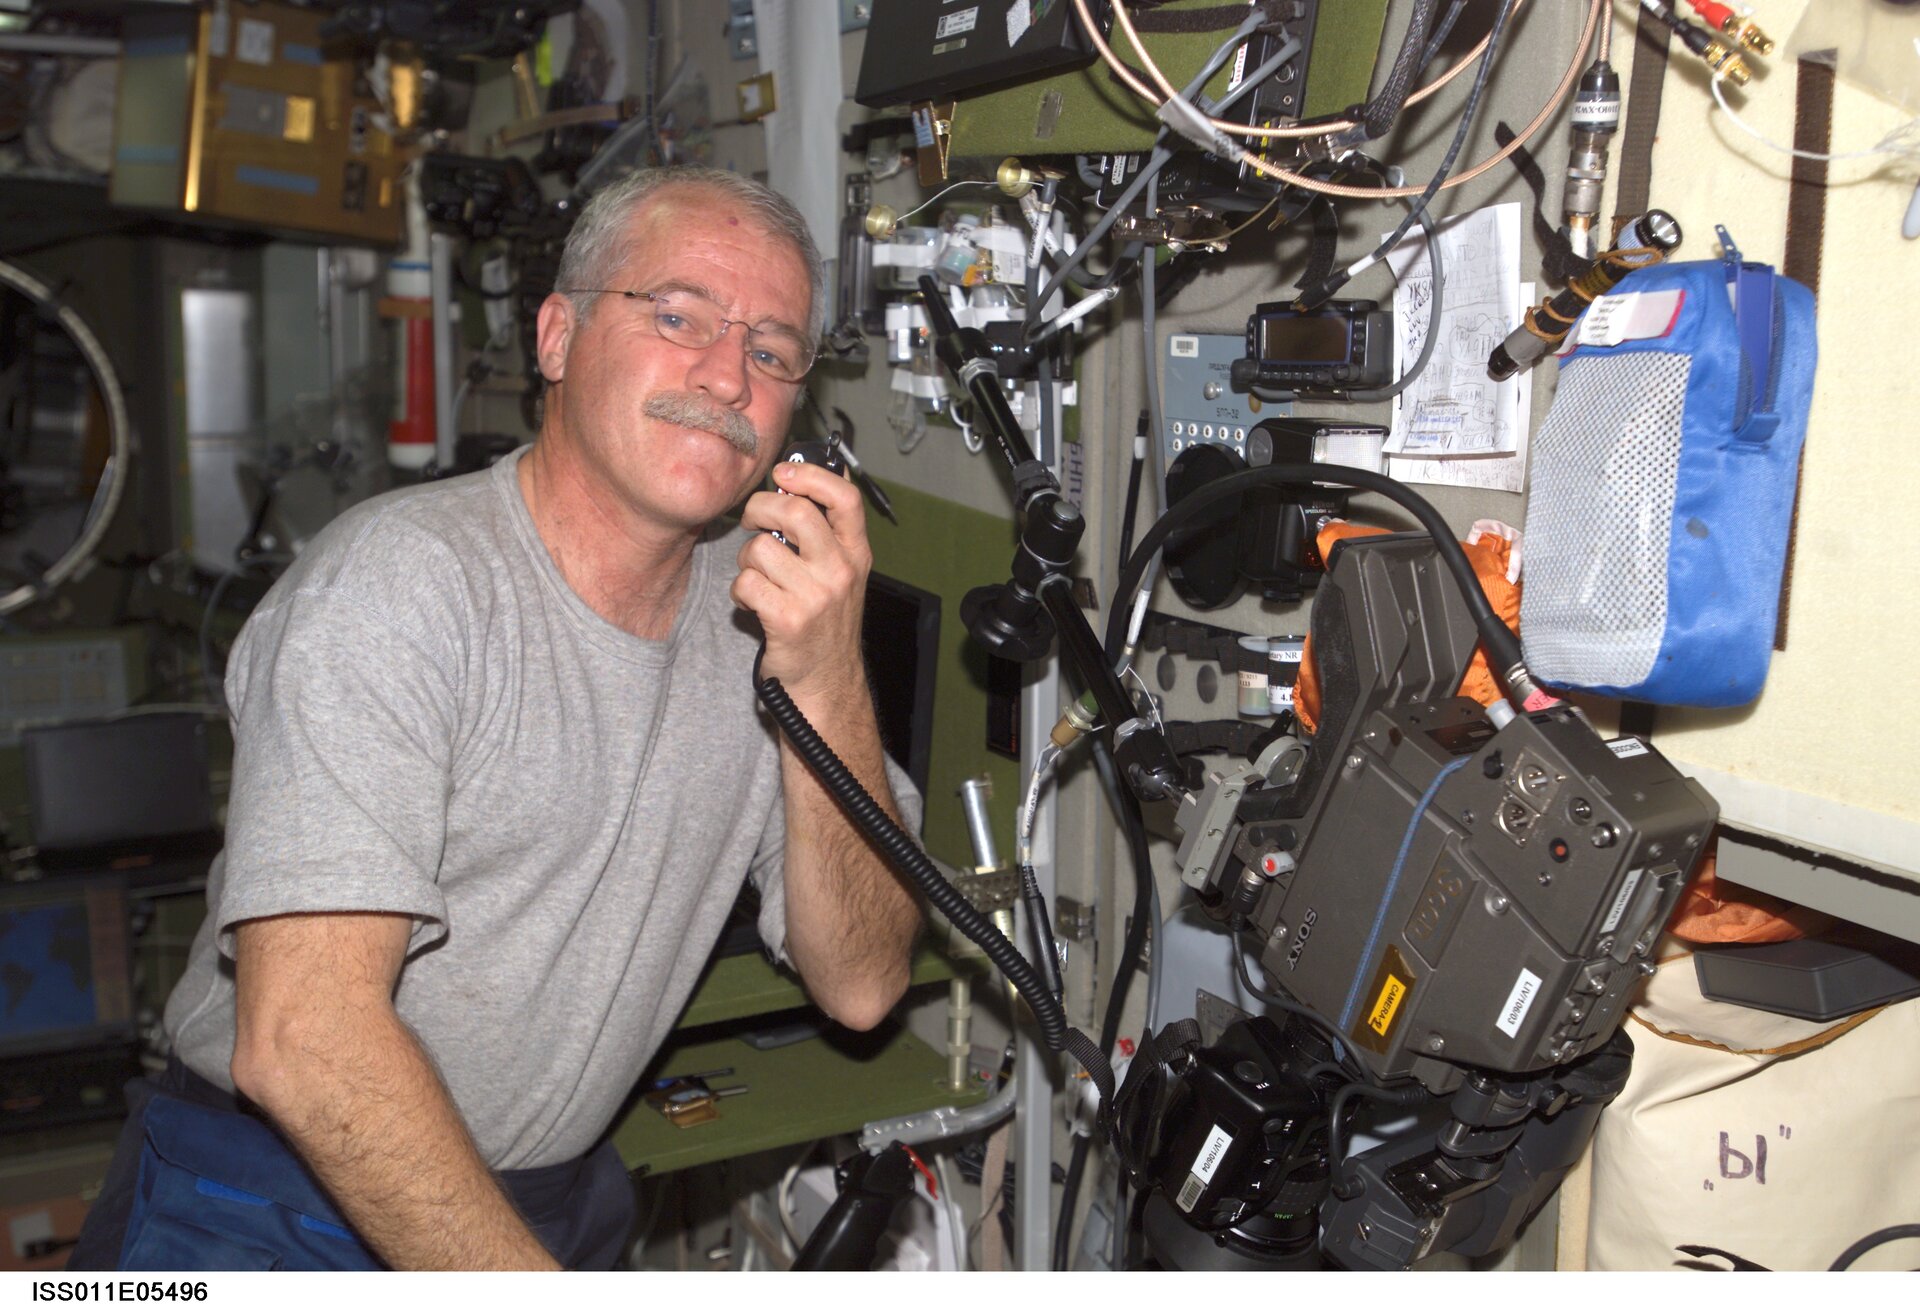 NASA astronaut John Phillips talking on ARISS